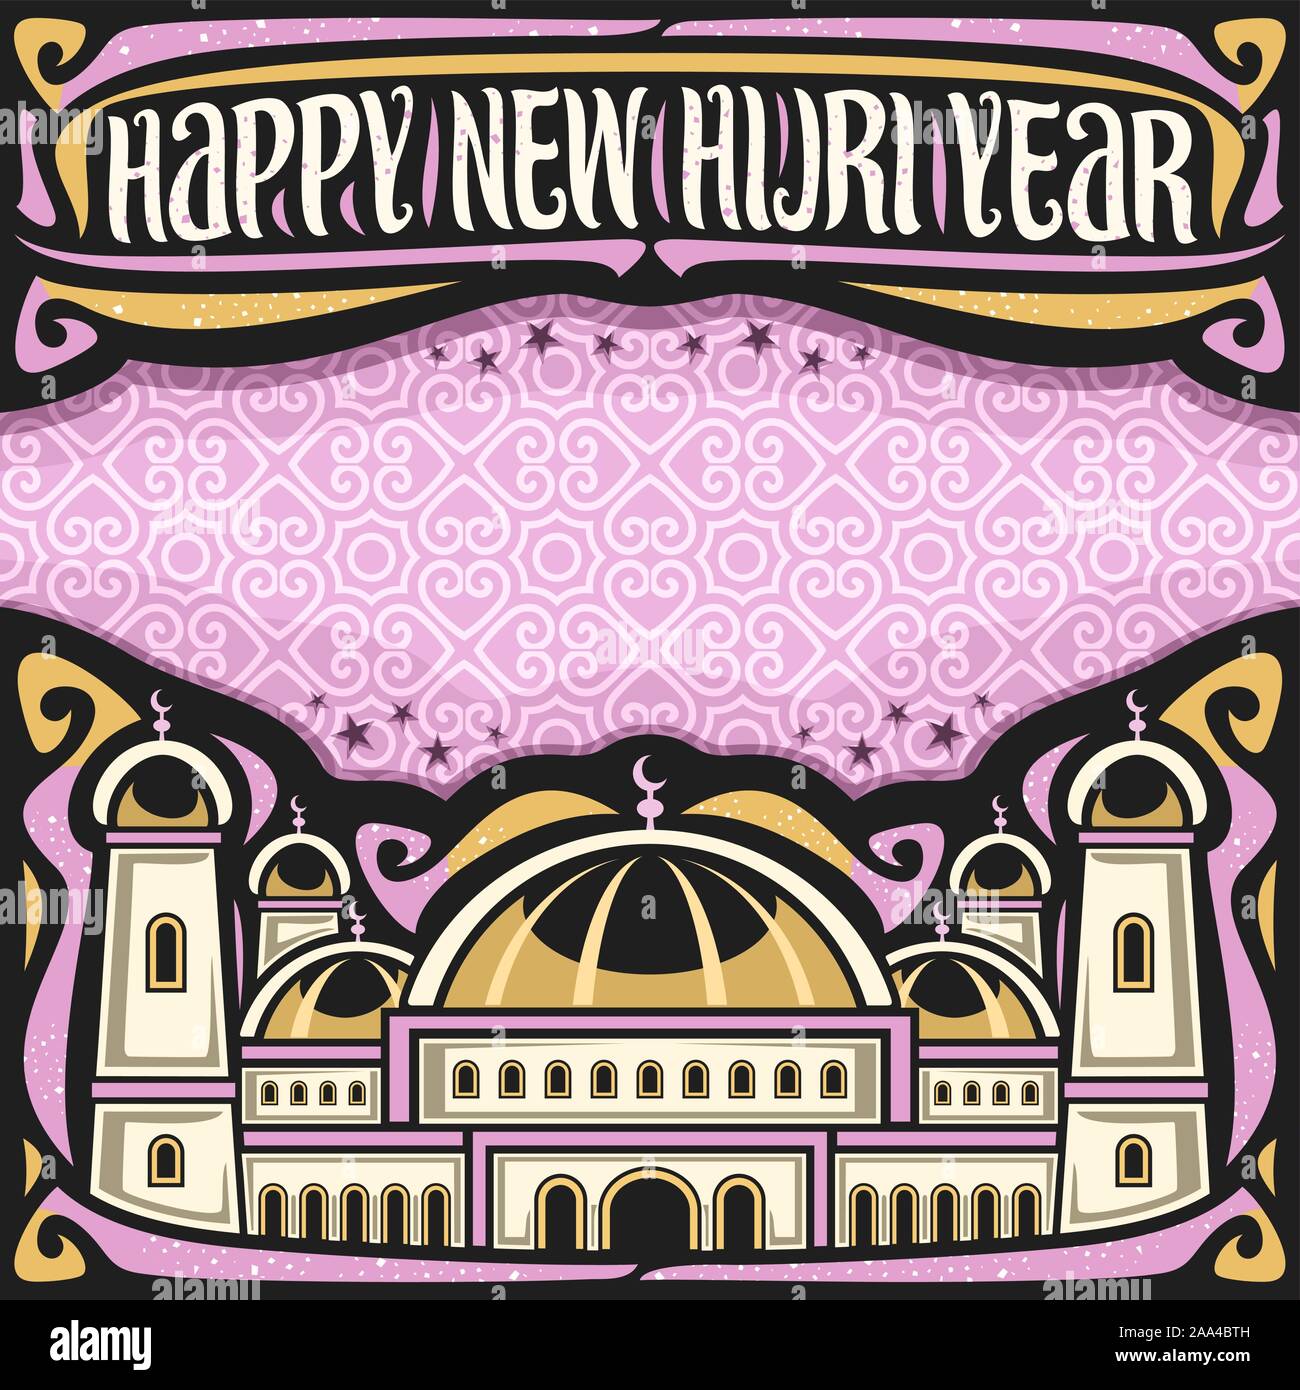 Vector affiche pour nouvelle année Hijri, frontière avec l'en-tête noire, la calligraphie au pinceau pour les mots bonne année hijri, copie de l'espace pour des félicitations, Illustration de Vecteur